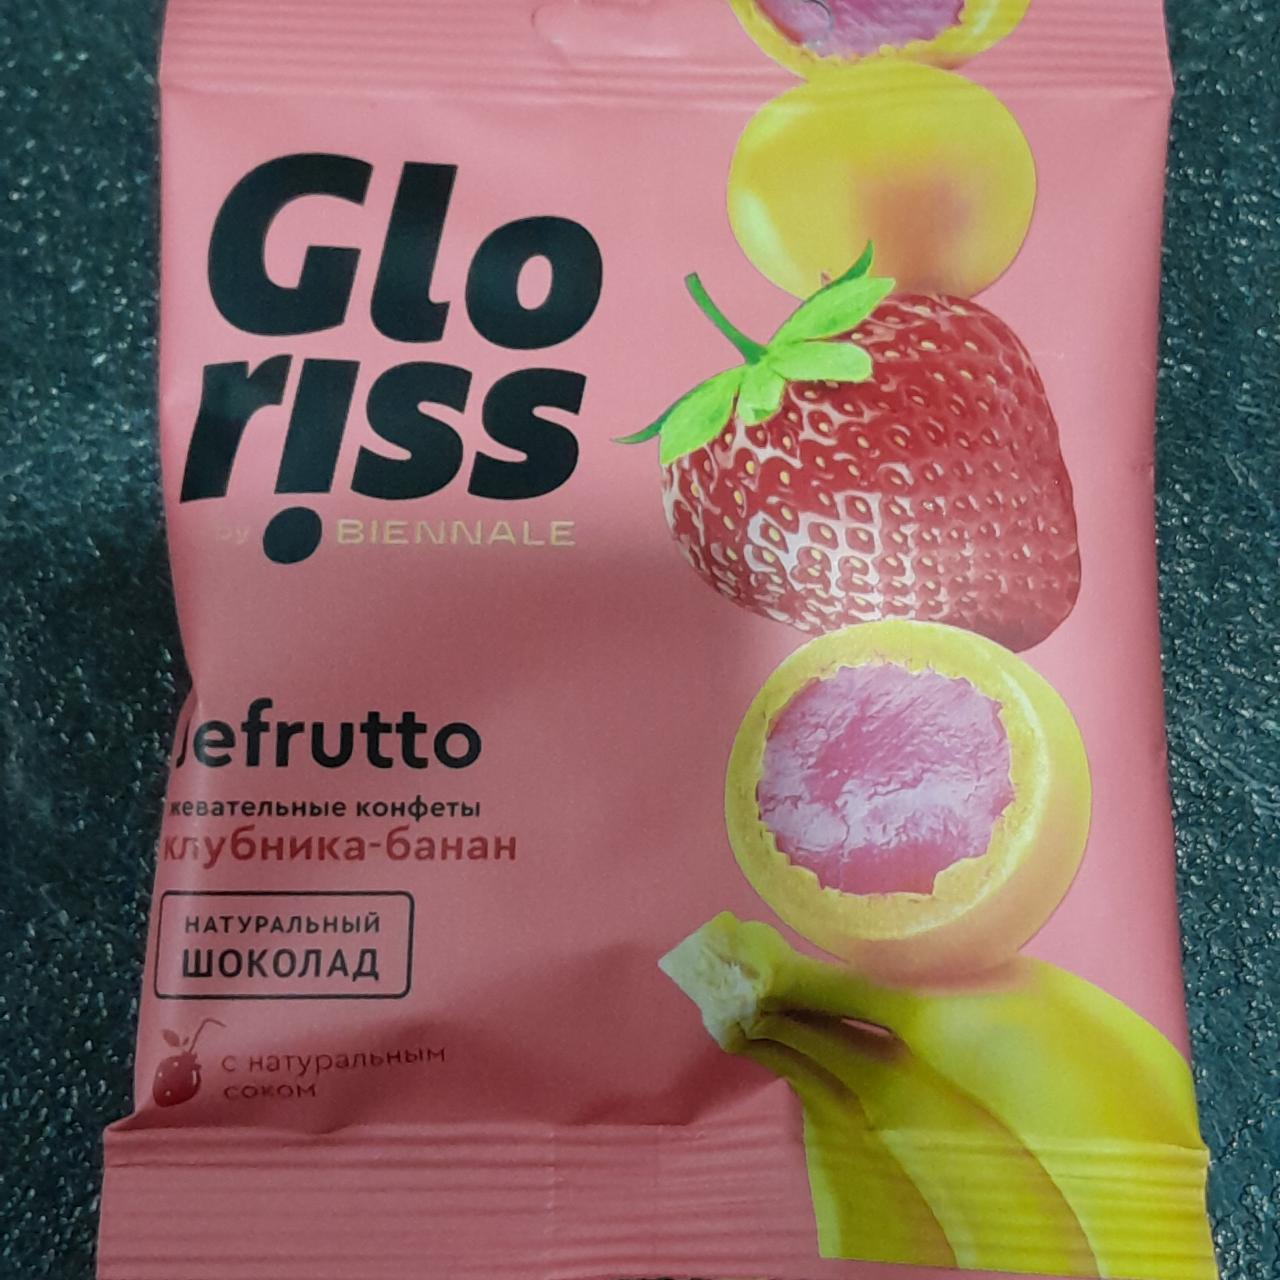 Фото - Жевательные конфеты jefrutto в шоколаде со вкусом клубника-банан Gloriss Biennale